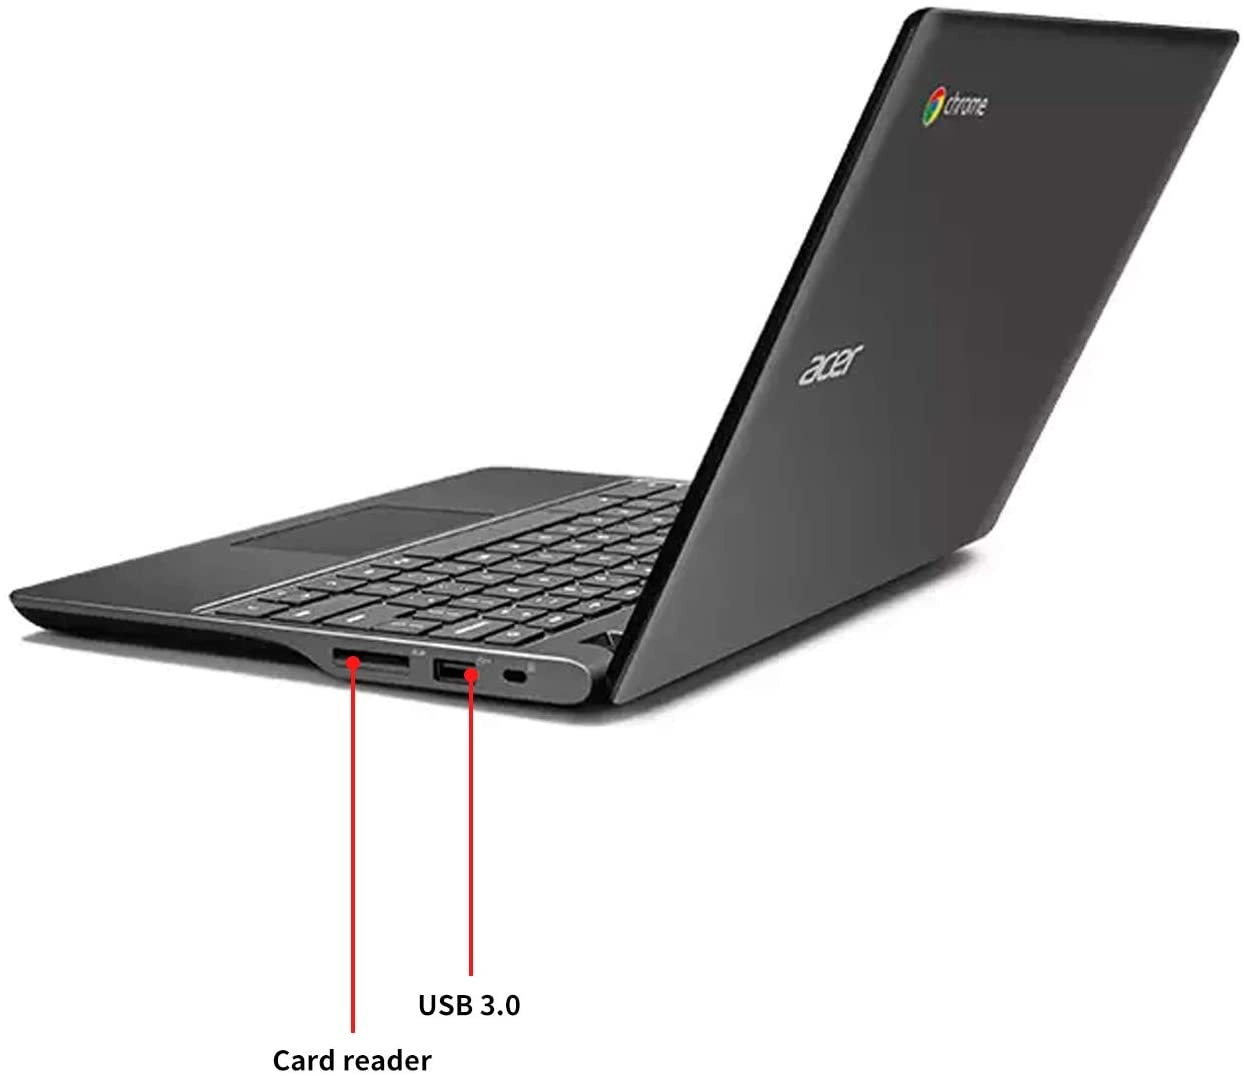 Ubrand C720 laptop image